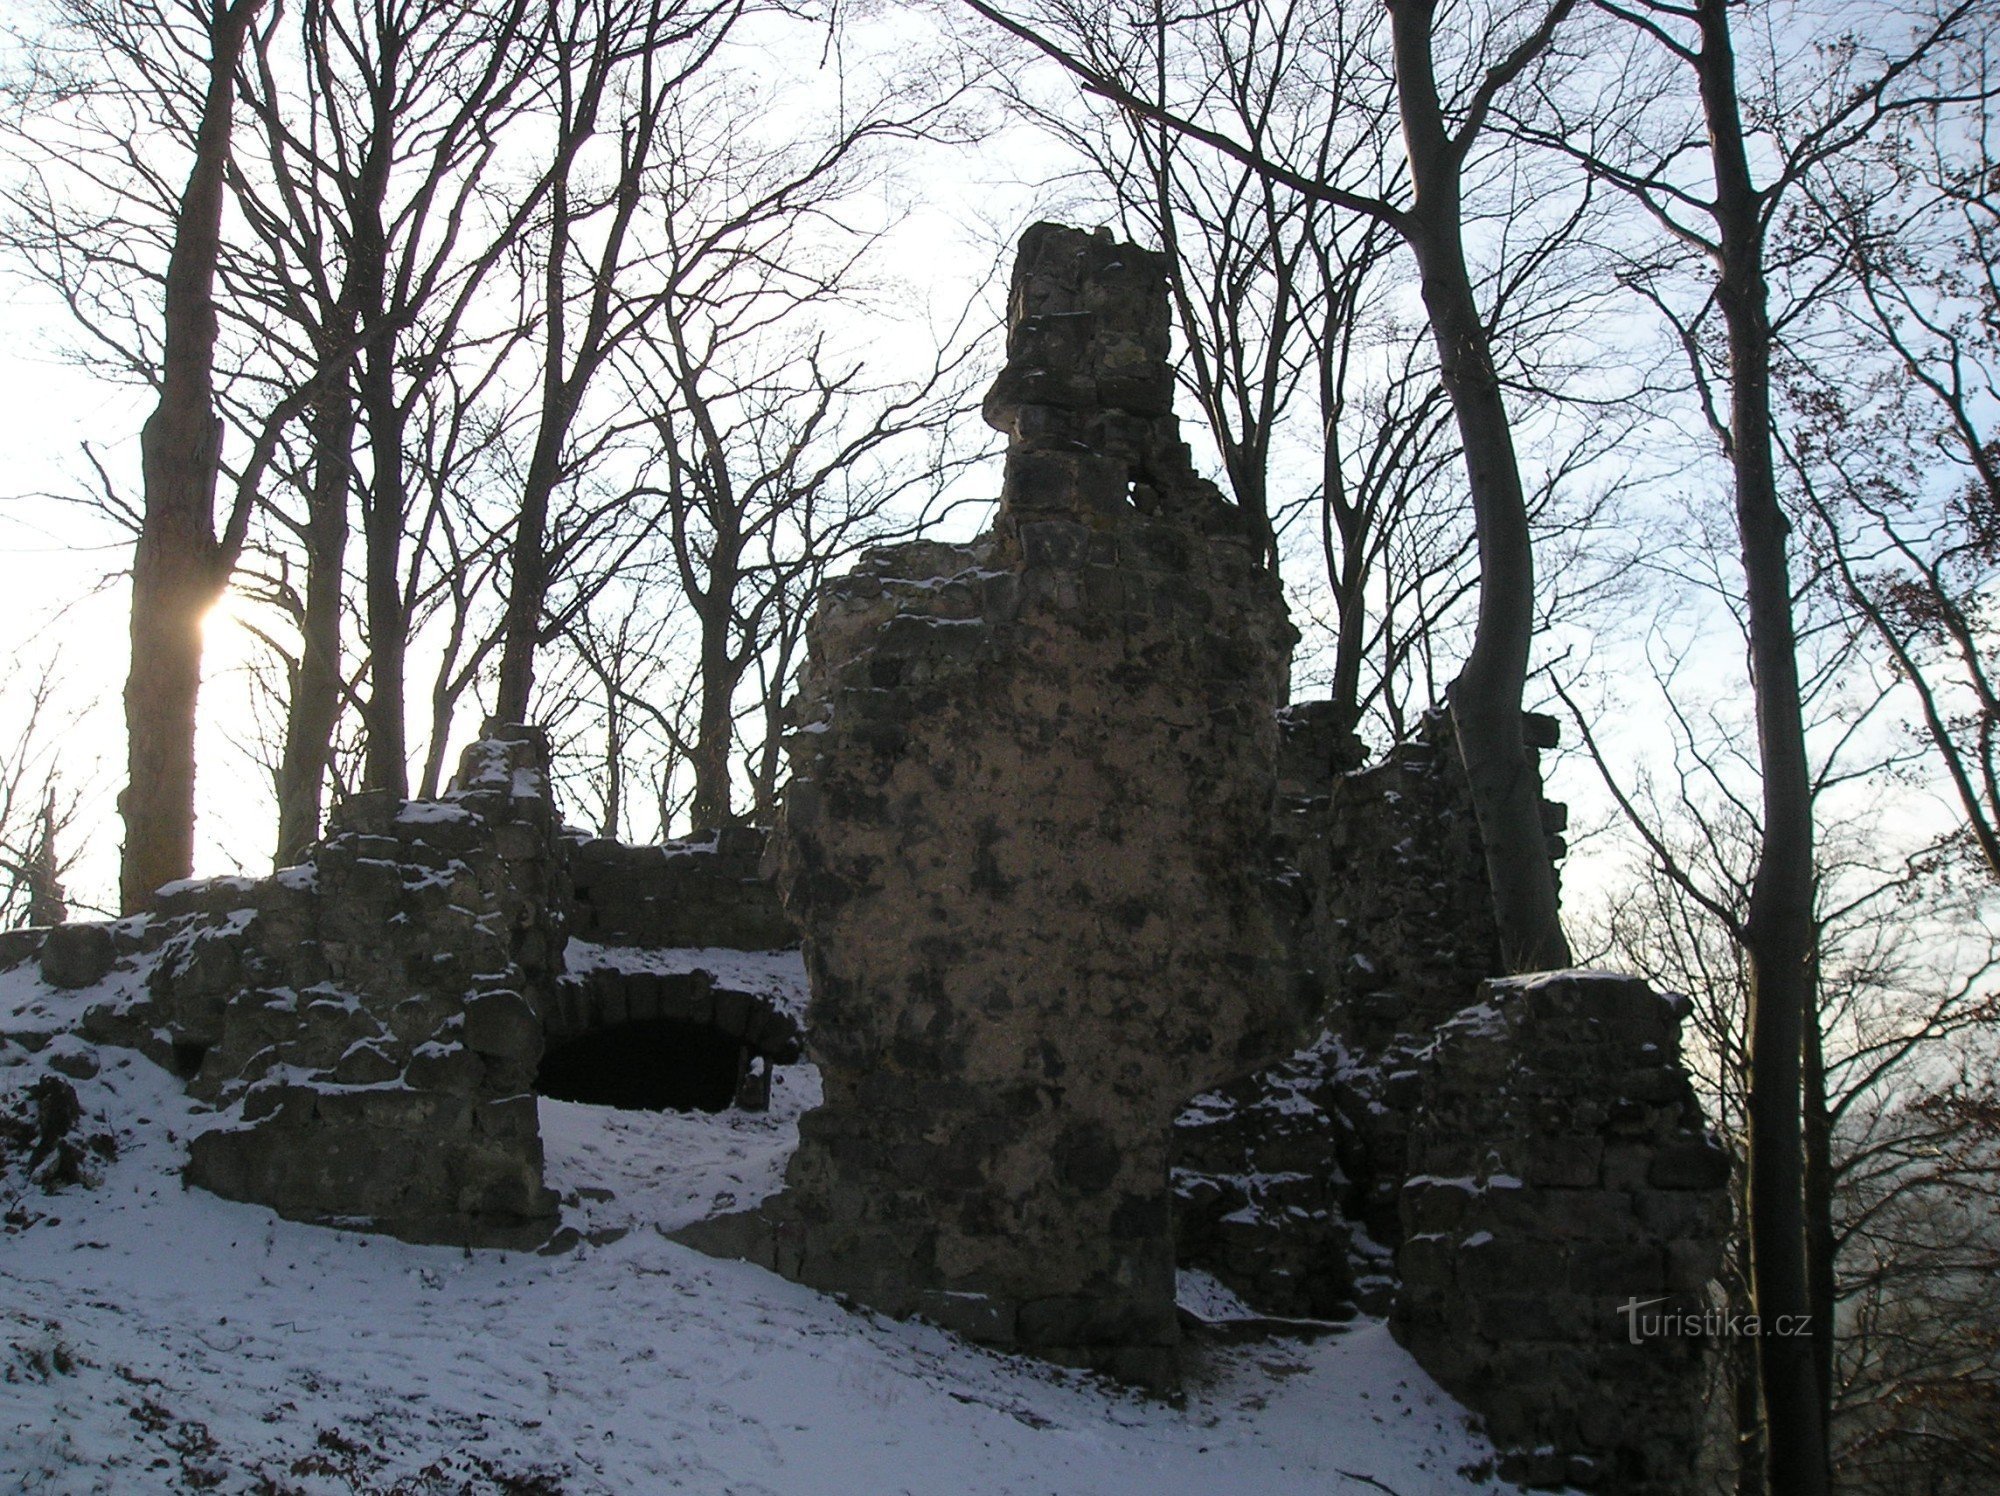 Τα ερείπια του κάστρου Děvín